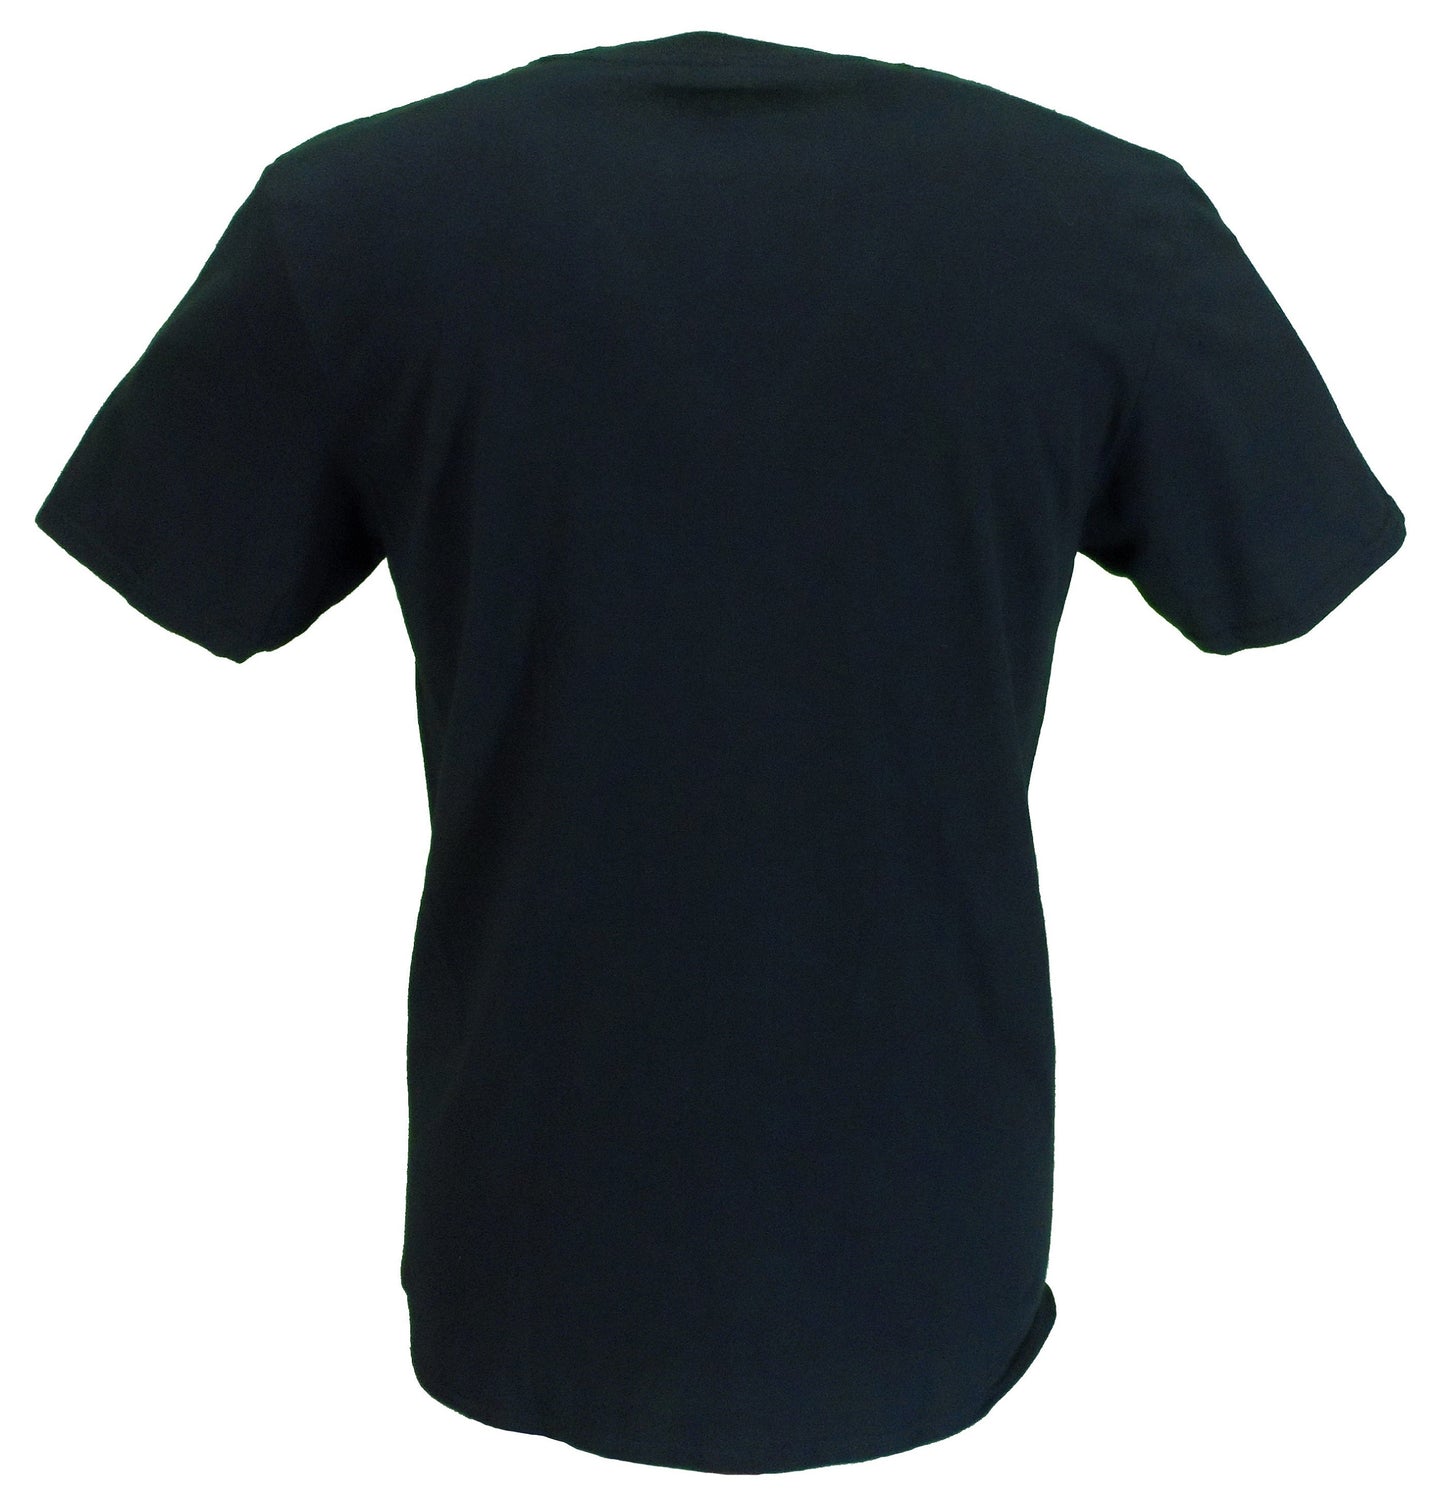 Camiseta oficial negra con rayas arcoíris b-52s para hombre